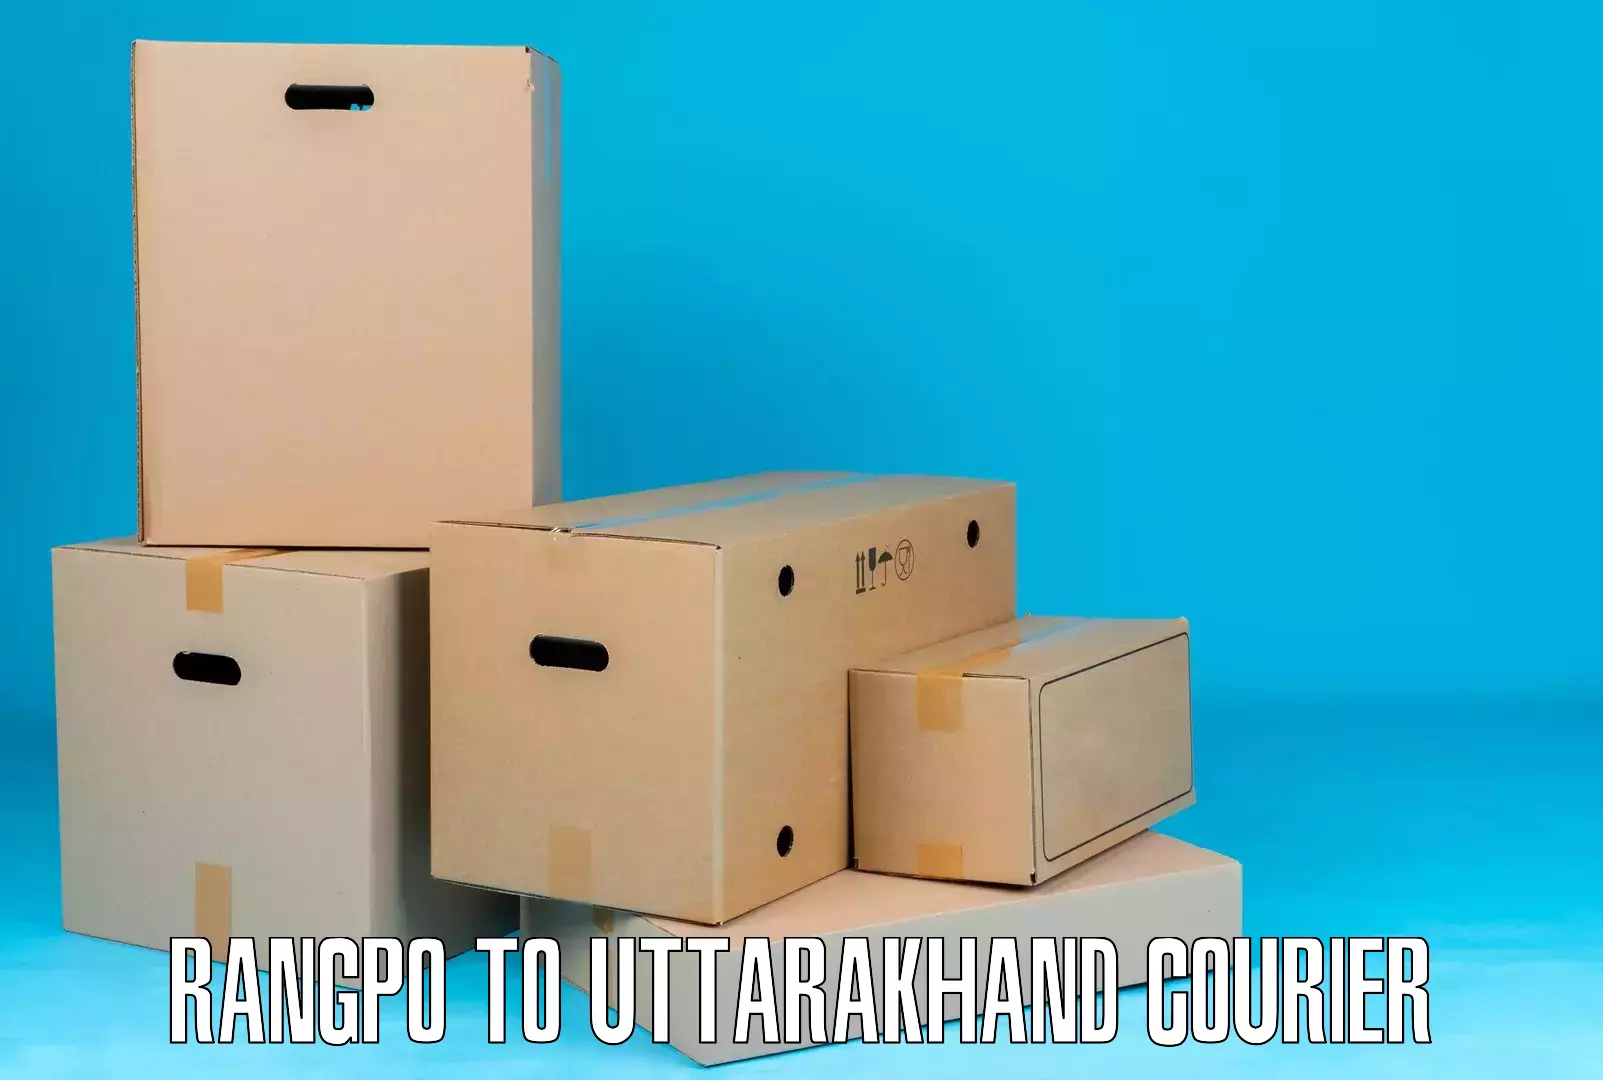 Tracking updates Rangpo to Uttarakhand